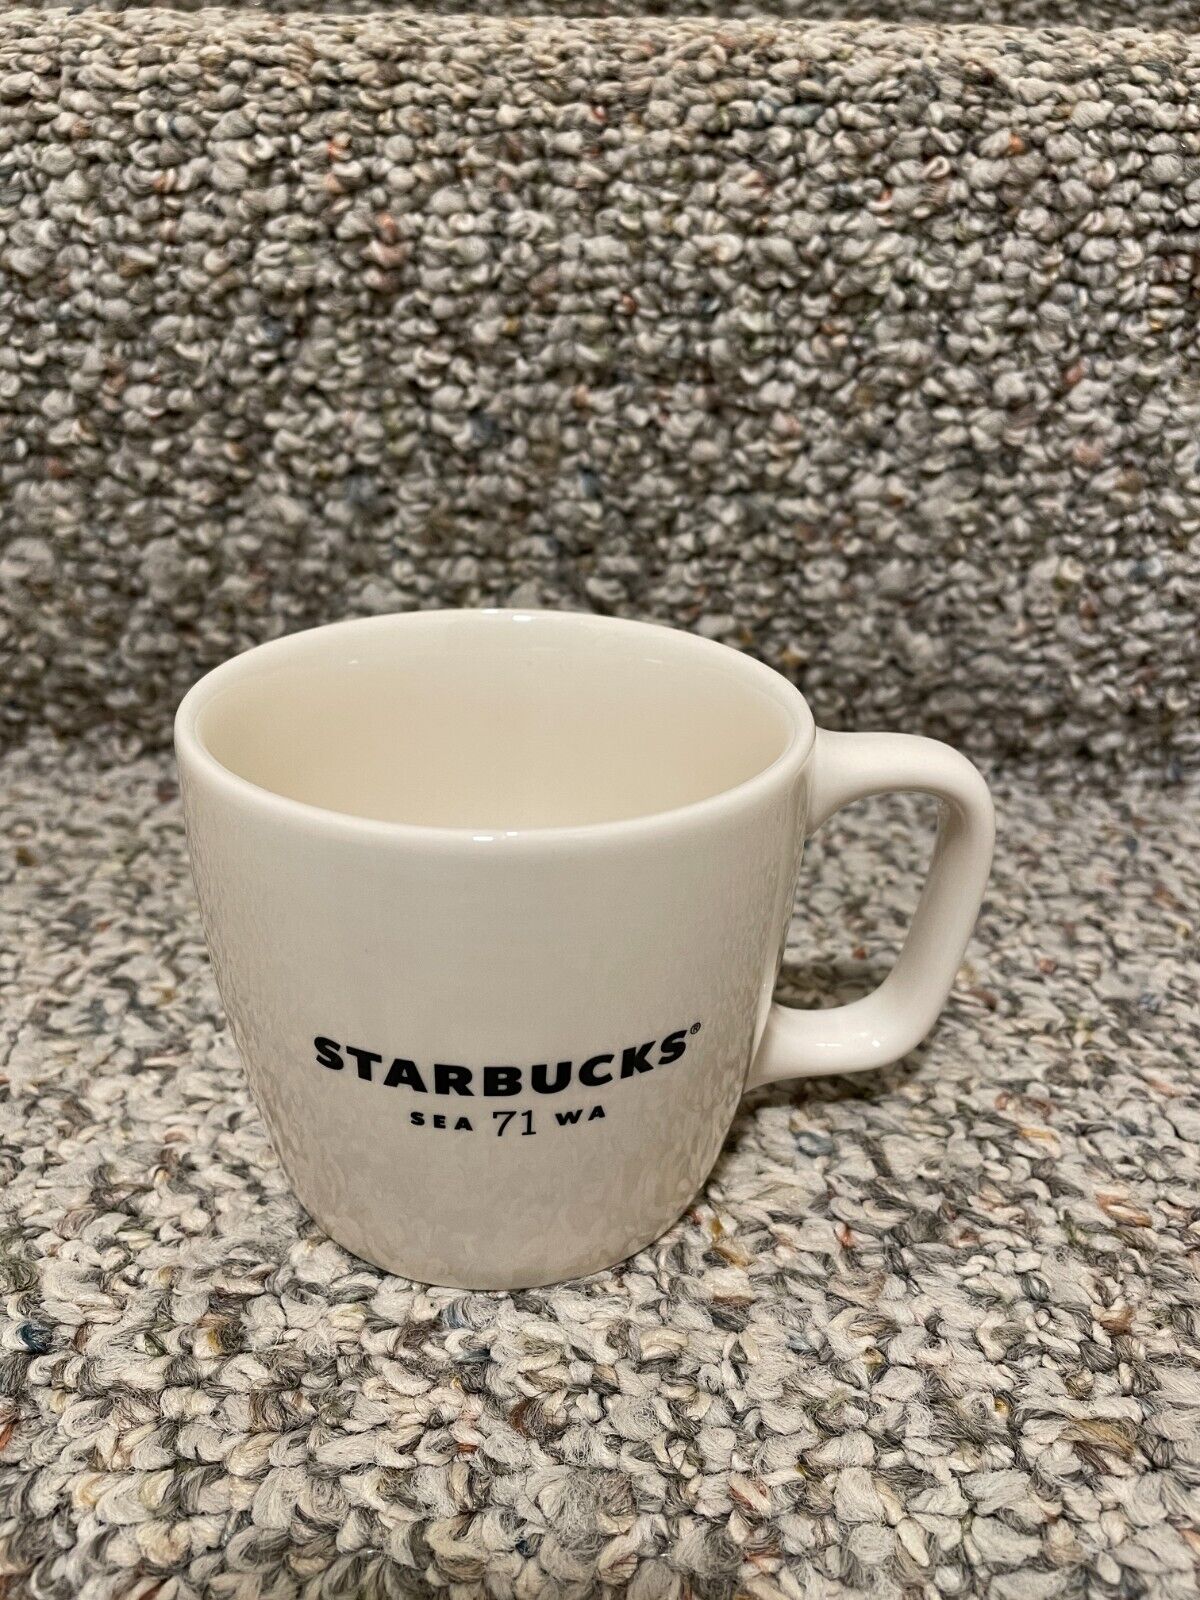 Starbucks Sea 71 Wa Ceramic White Mug Cup Collectible 2018 12 oz New No Box